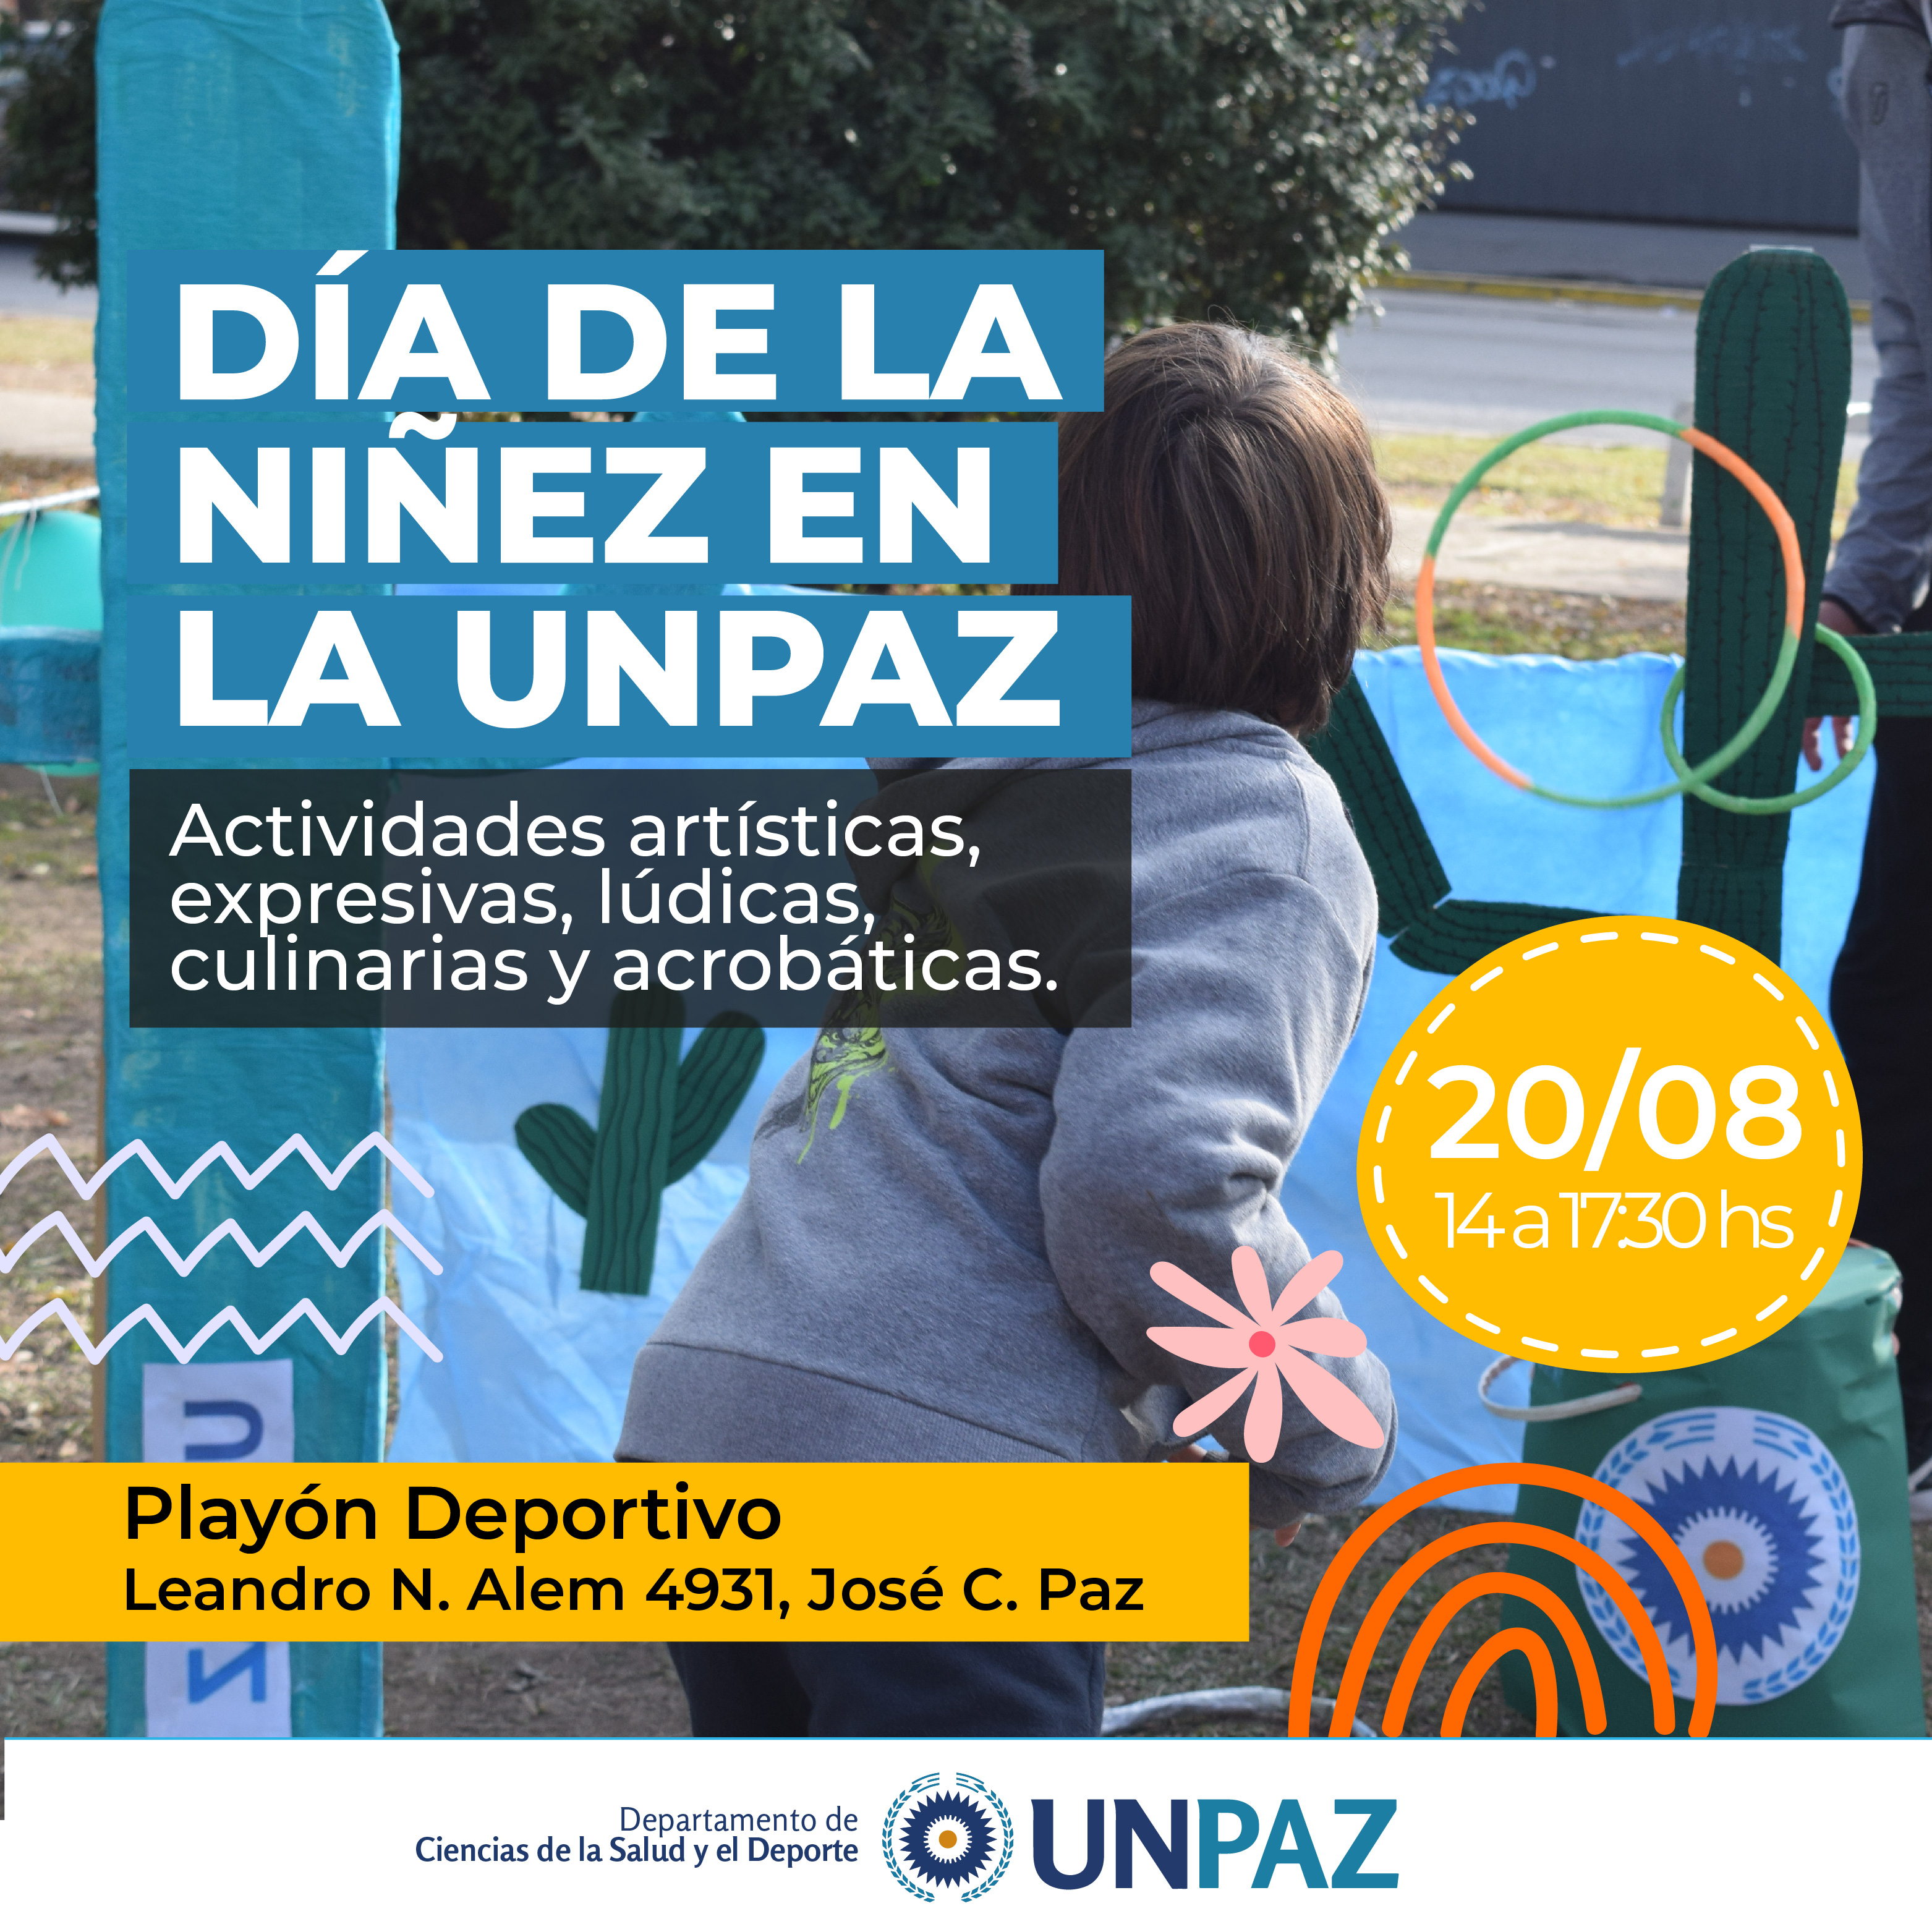 La UNPAZ celebra la niñez con actividades en su Playón Deportivo